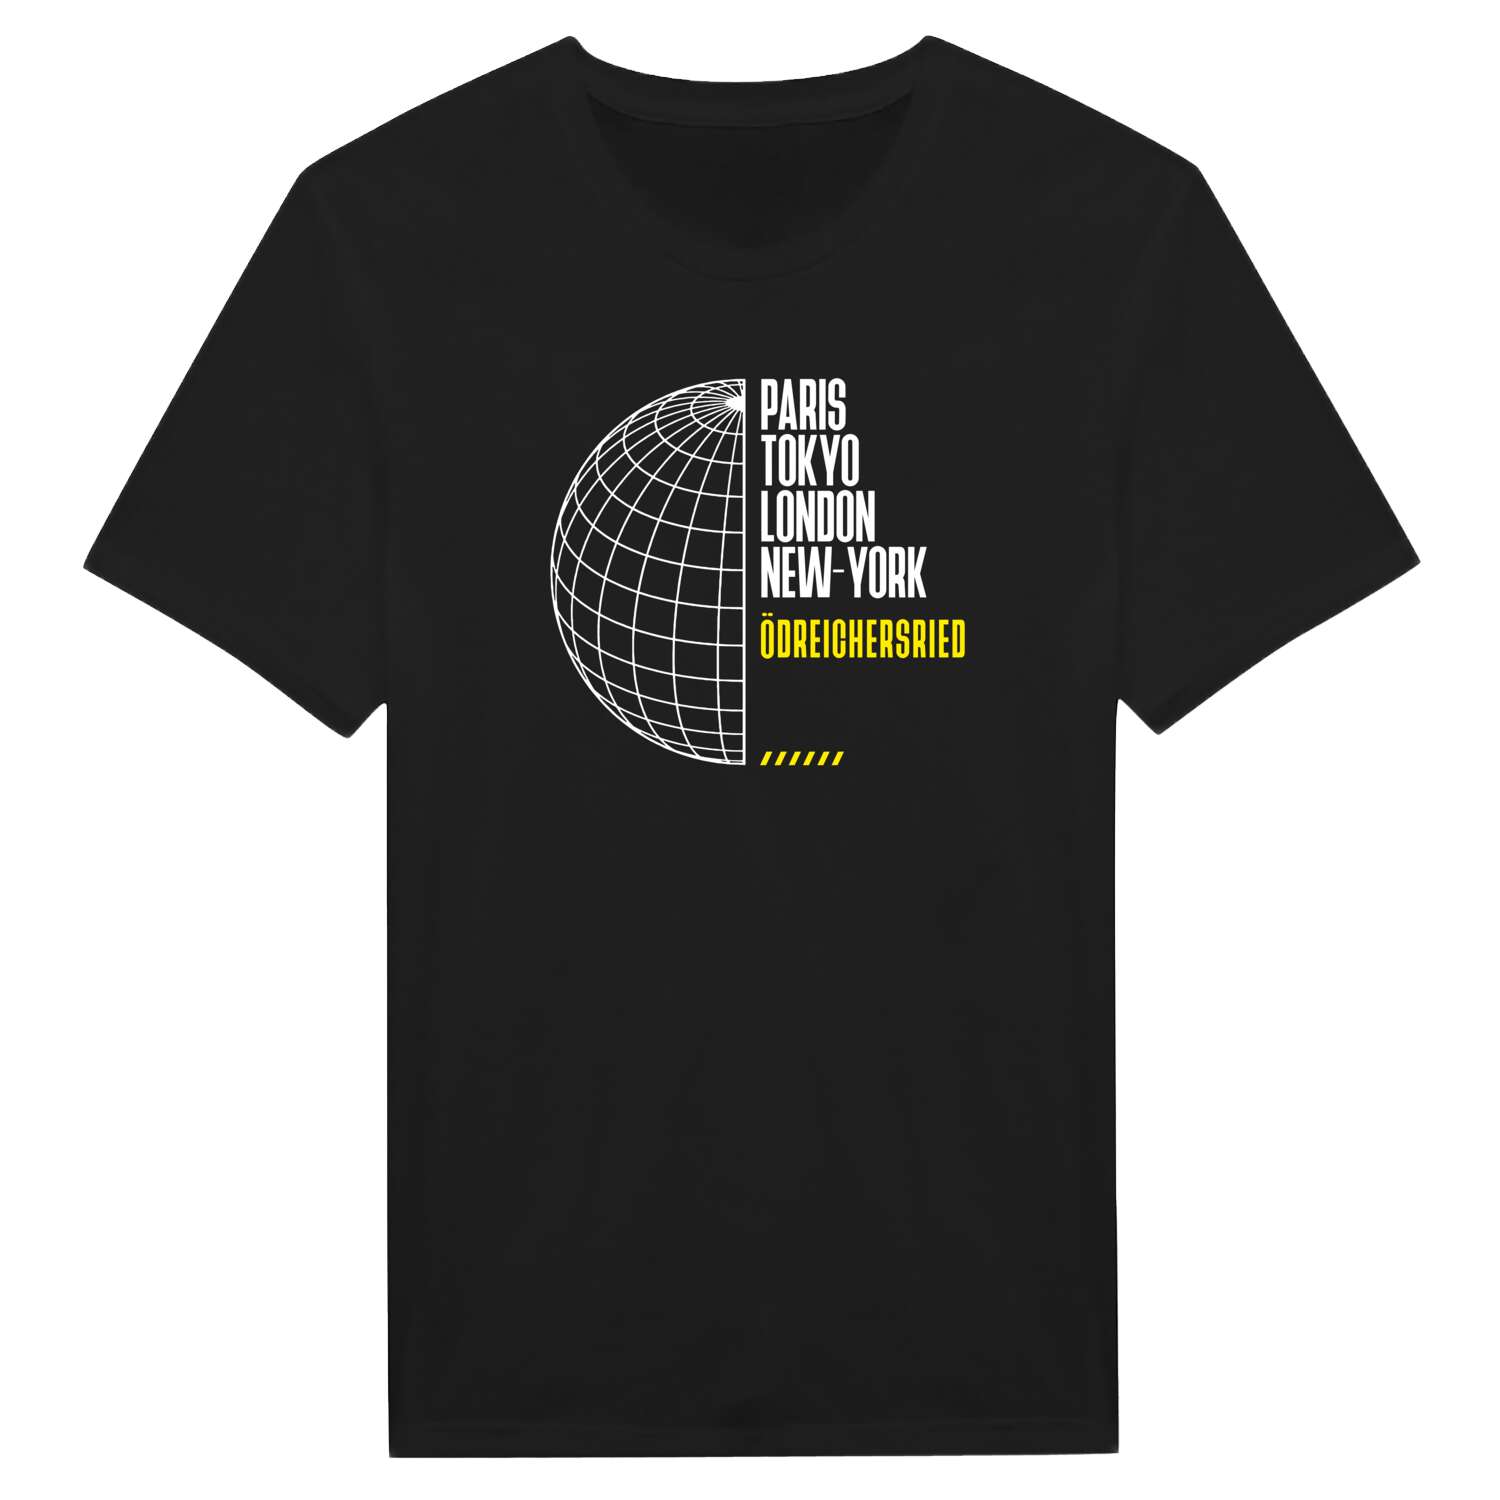 Ödreichersried T-Shirt »Paris Tokyo London«